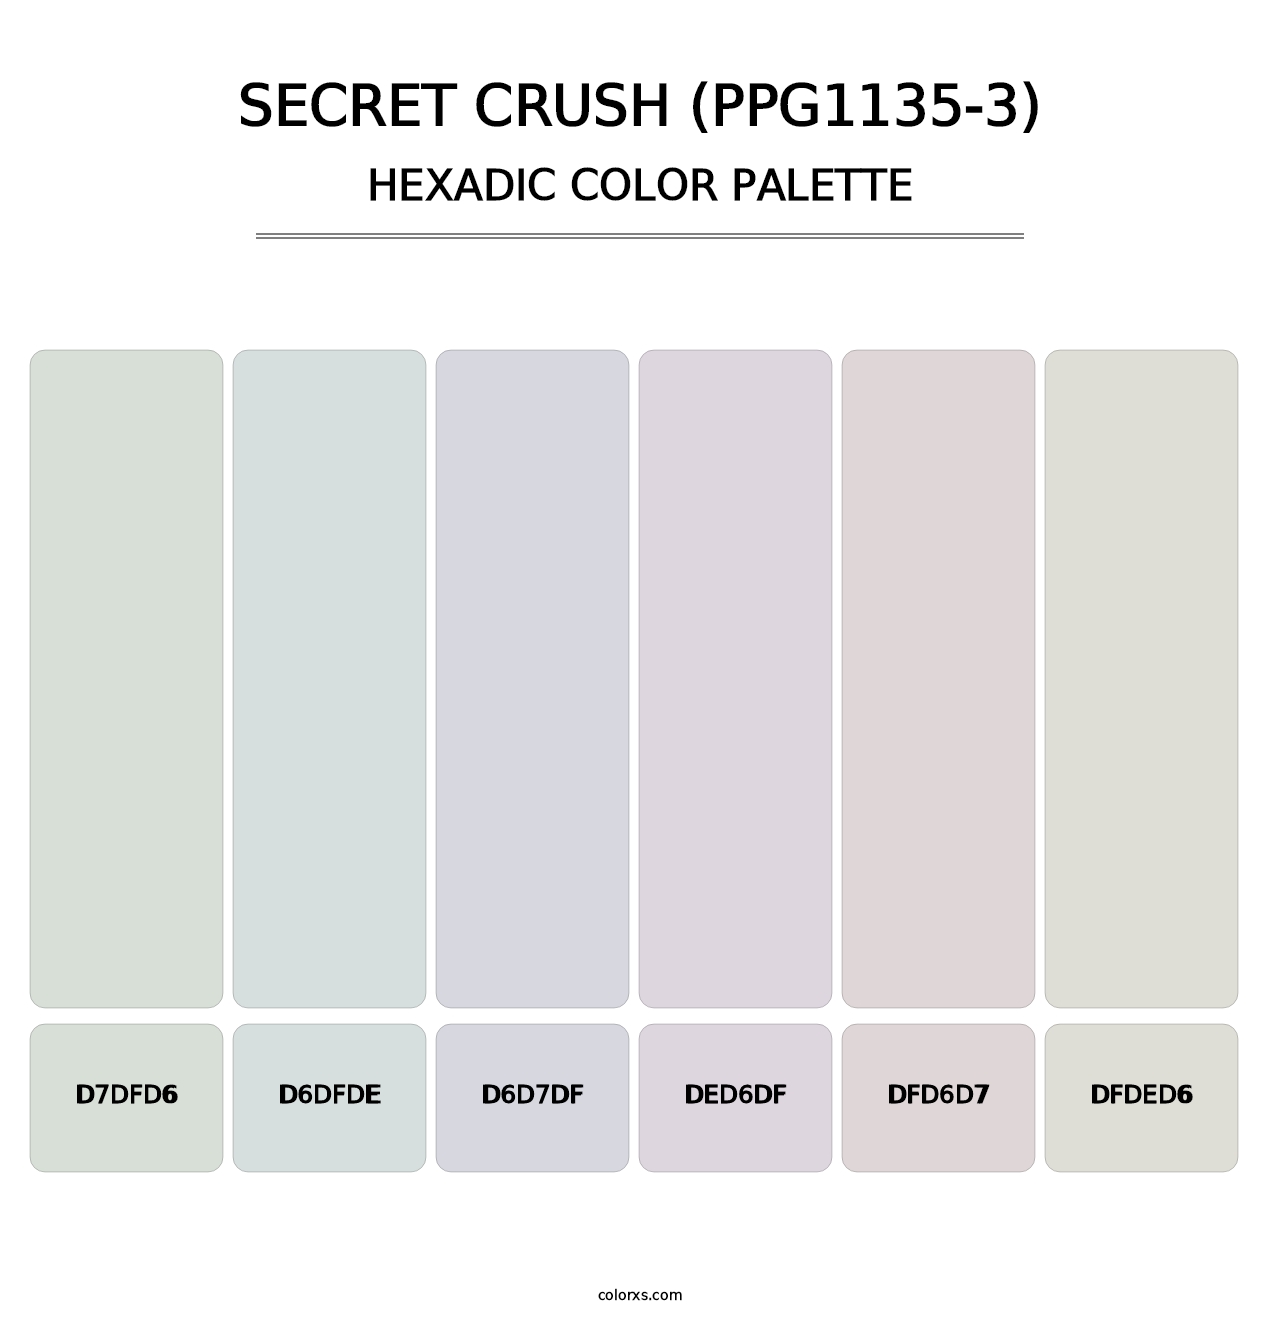 Secret Crush (PPG1135-3) - Hexadic Color Palette